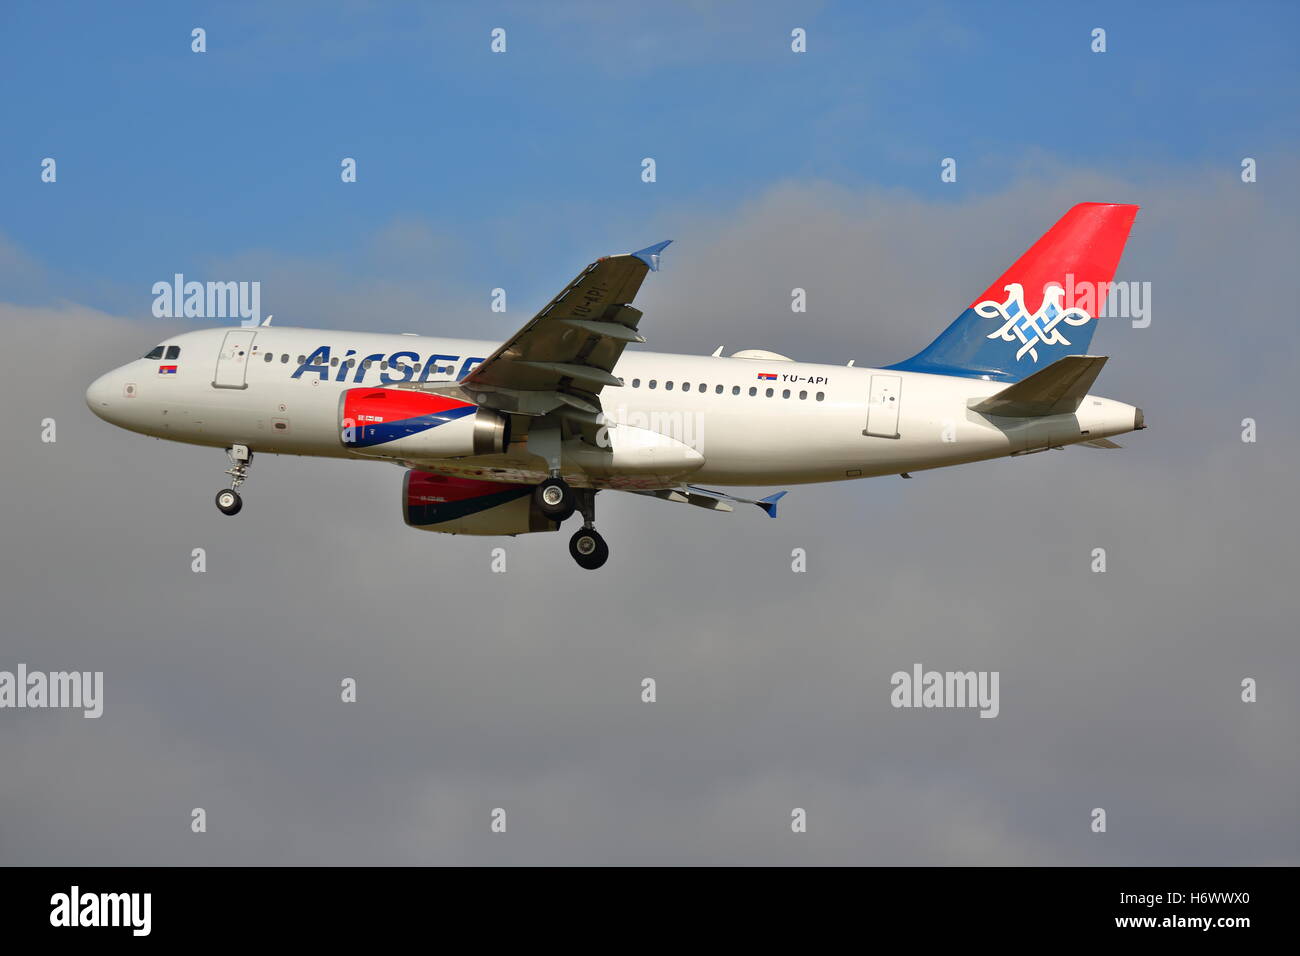 Luft Serbien Airbus A319 YU-API Landung am Flughafen London Heathrow Stockfoto